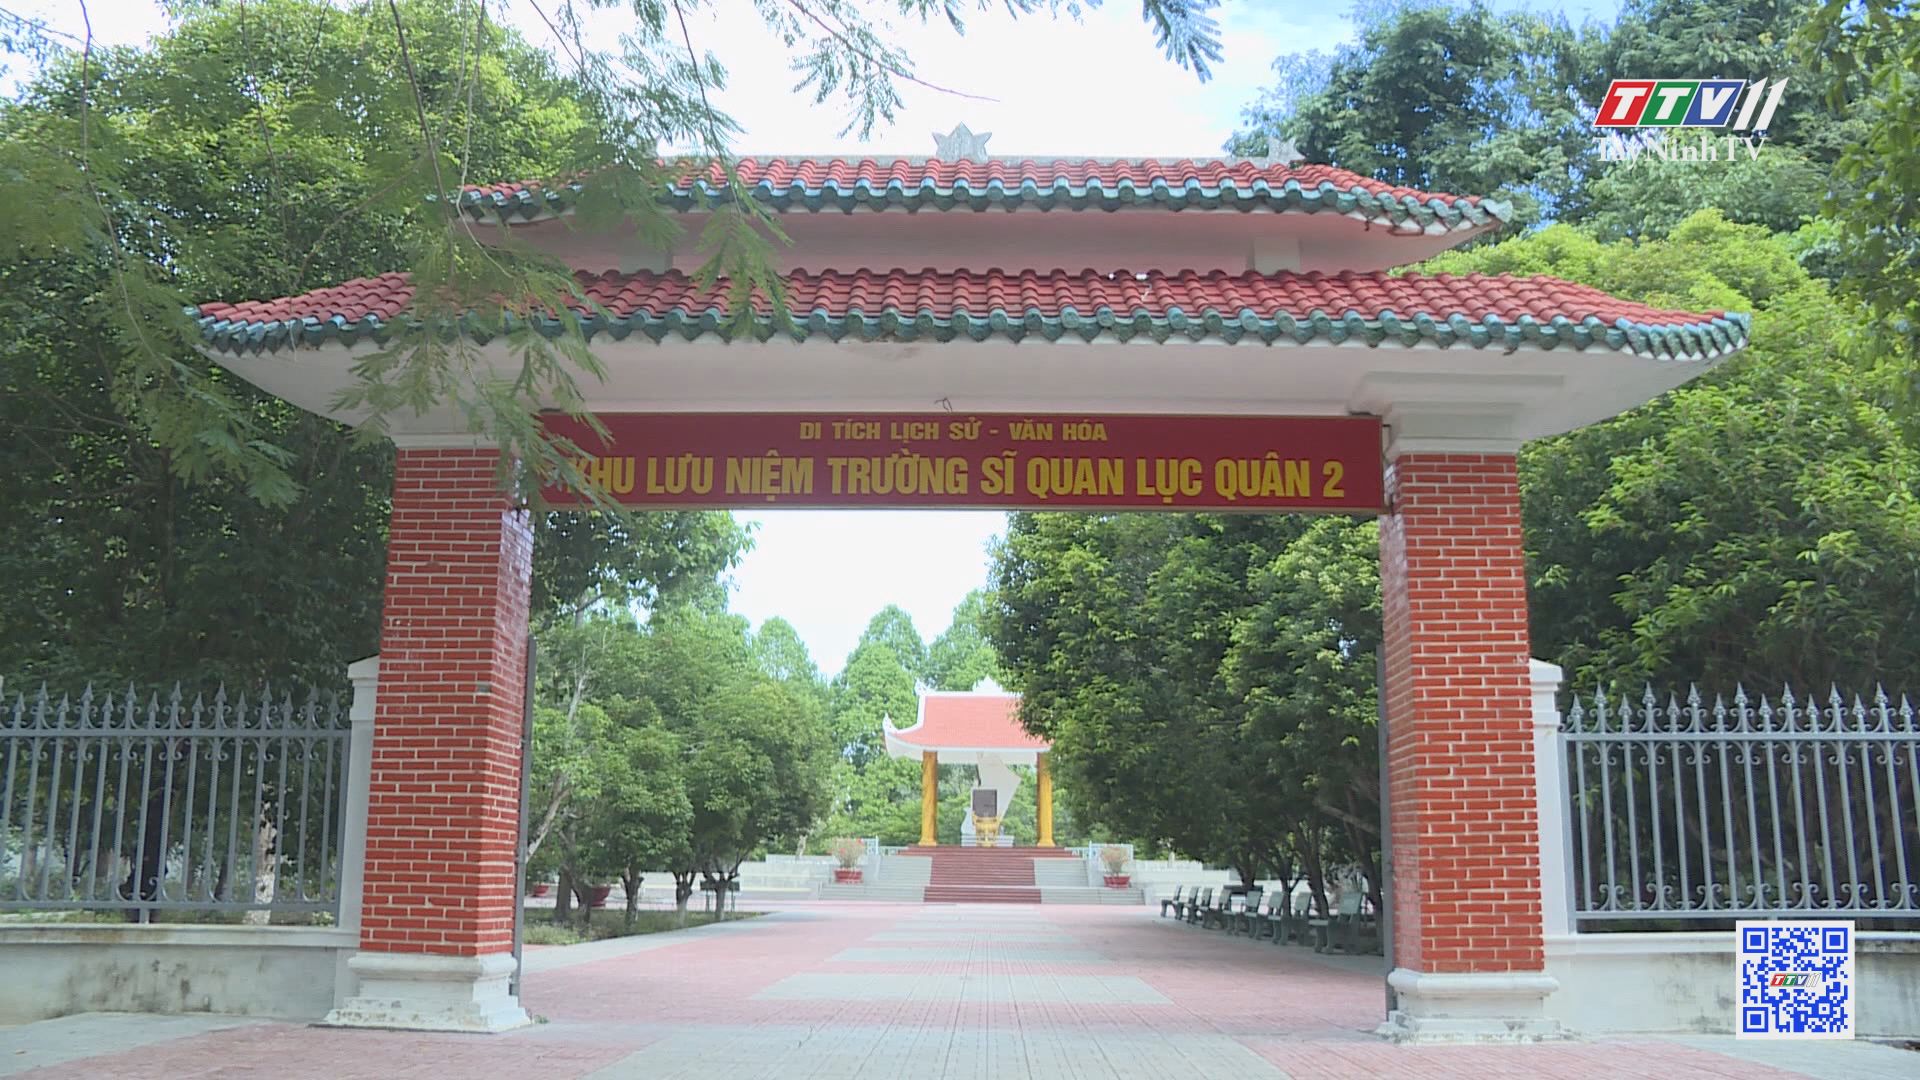 Di tích khu lưu niệm Trường Sĩ Quan Lục Quân 2 | DI TÍCH DANH THẮNG | TayNinhTV